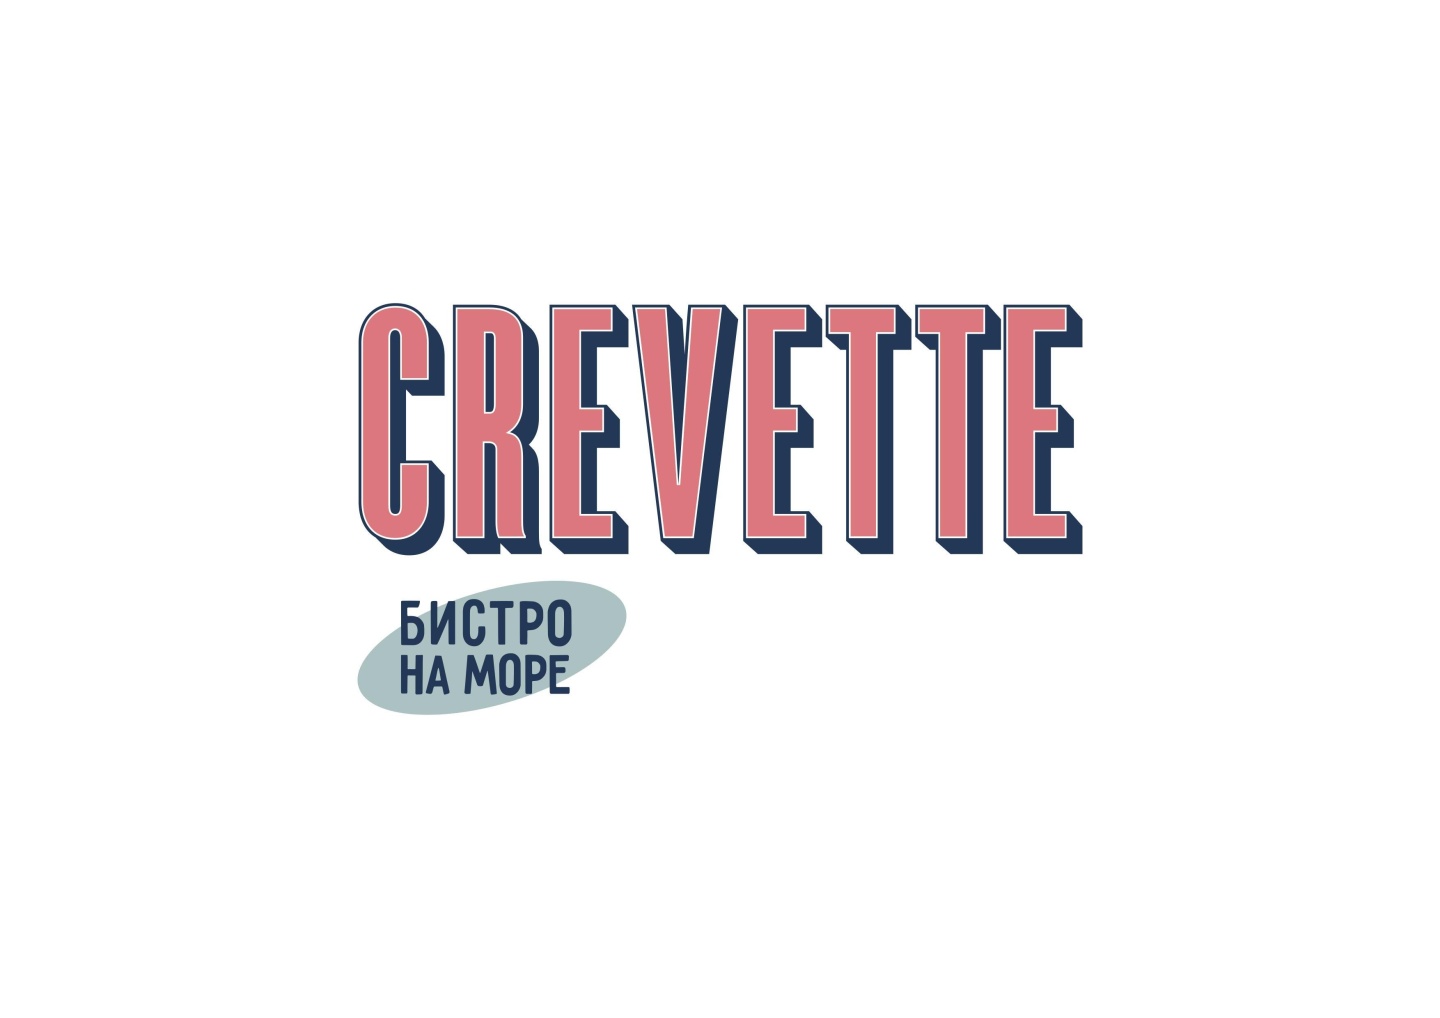 Кожевенная линия 30 crevette. Crevette Bistro ресторан СПБ. Crevette ресторан СПБ. Ресторан кревет Санкт Петербург. Crevette ресторан СПБ Севкабель.